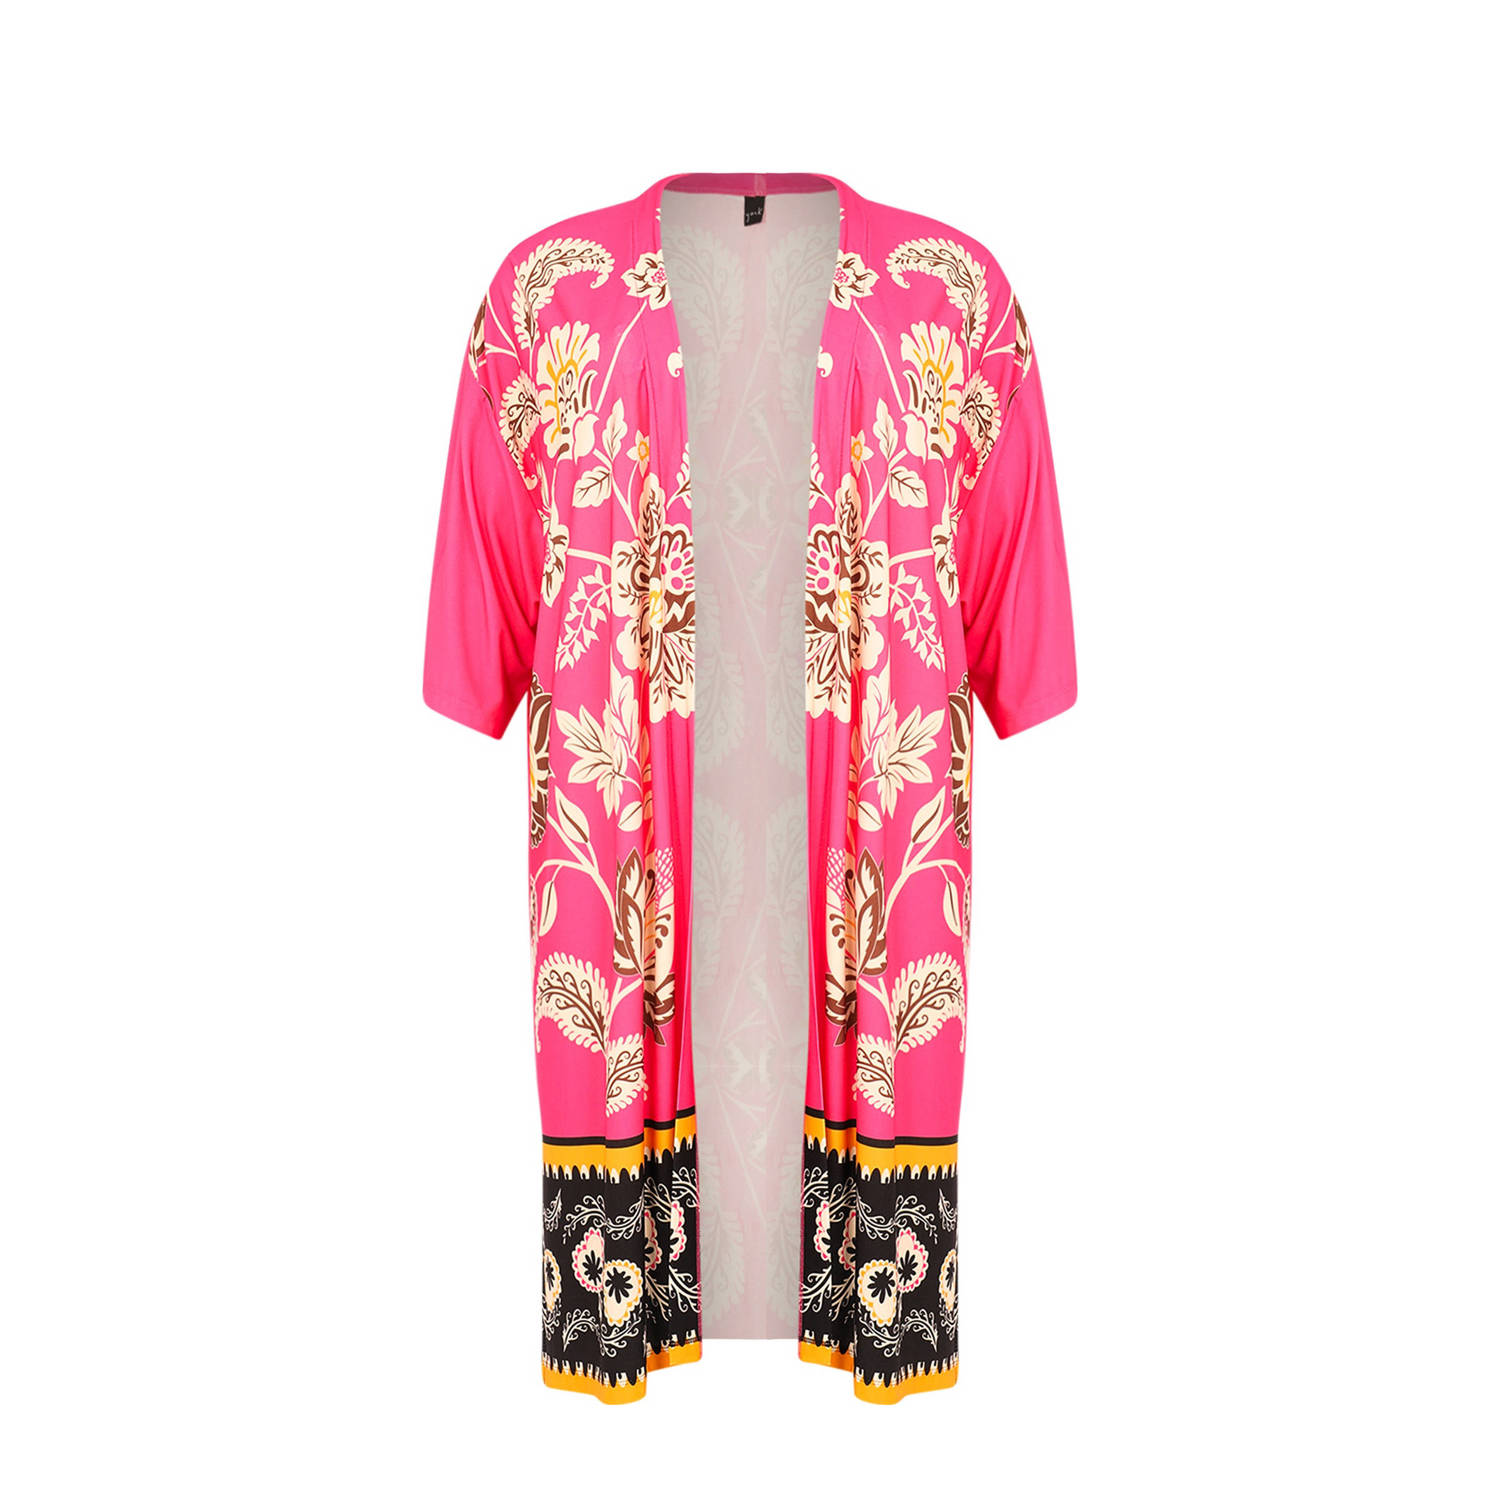 Yoek gebloemd kimono roze